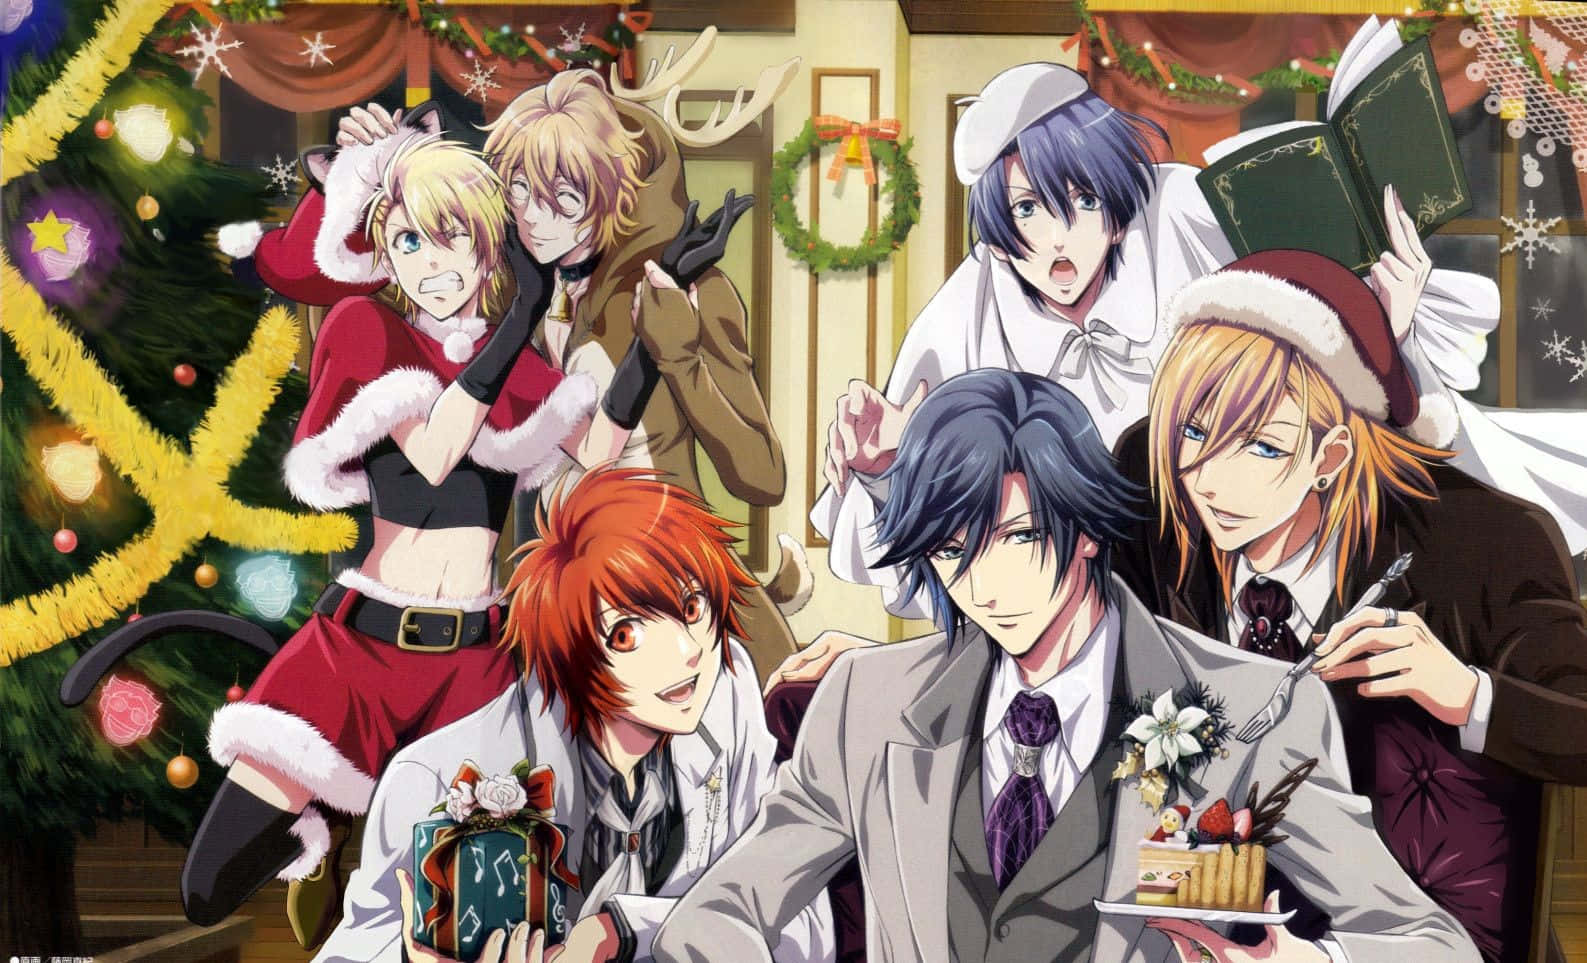 Feiernsie Die Feiertage Mit Anime Weihnachten.